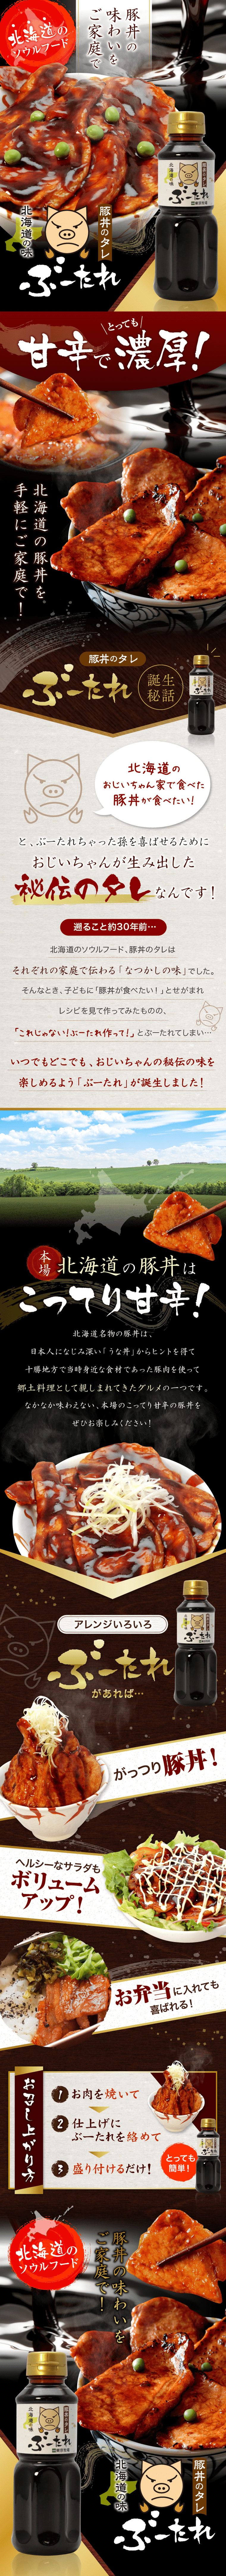 豚丼のタレ ぶーたれ_sp_1